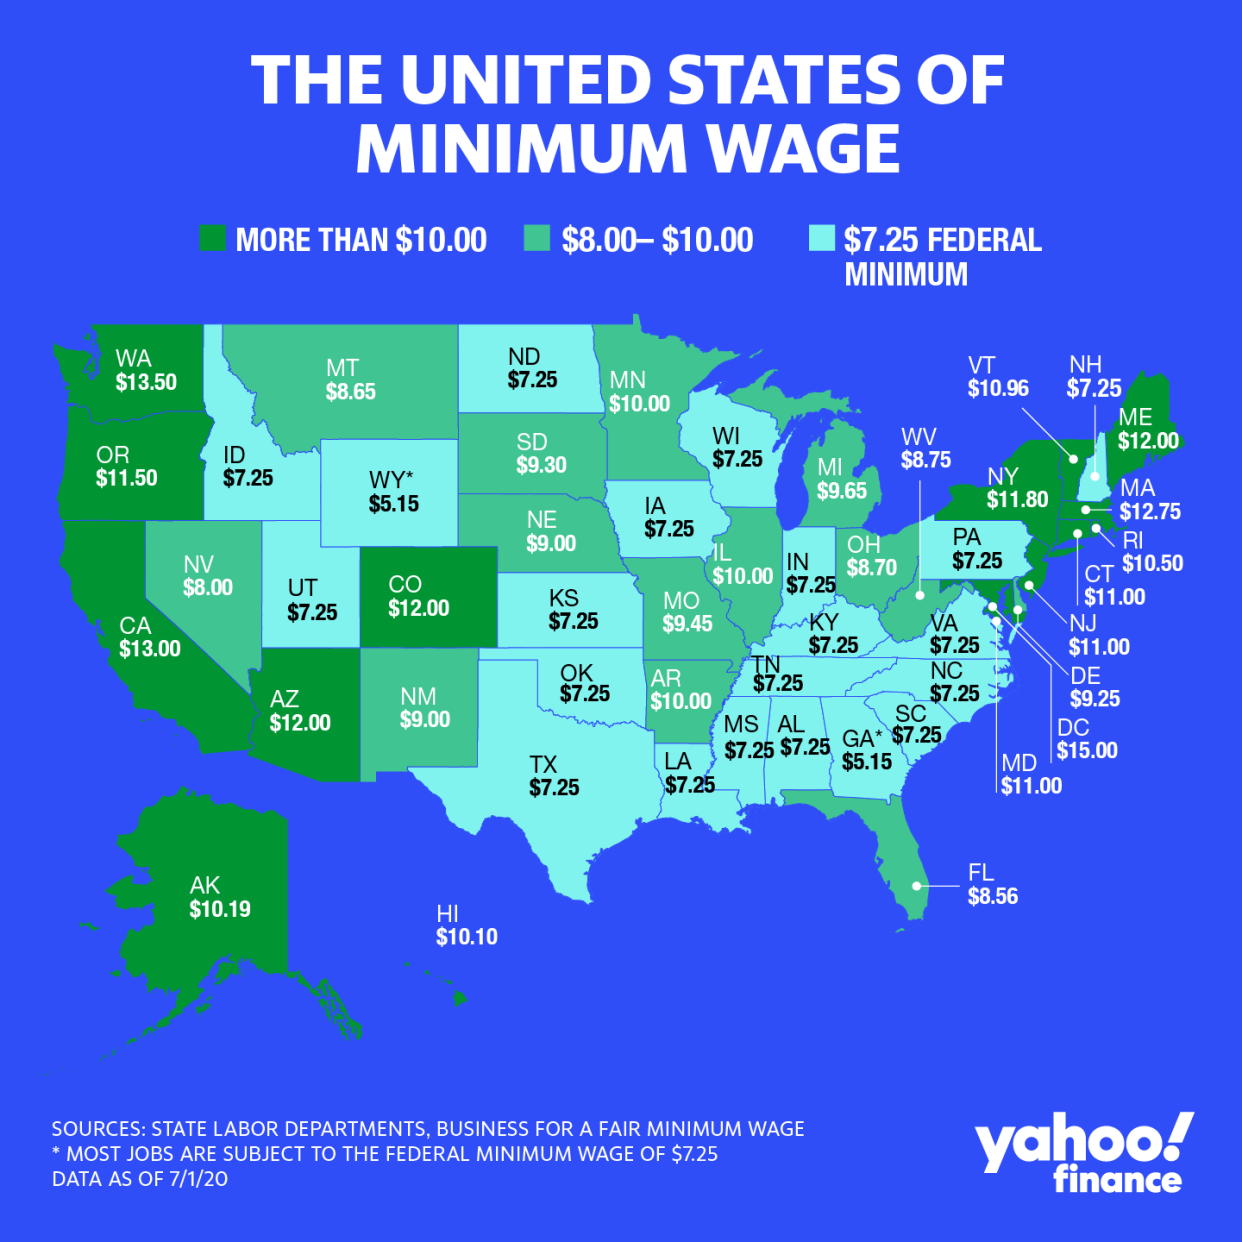 The United States of Minimum Wage